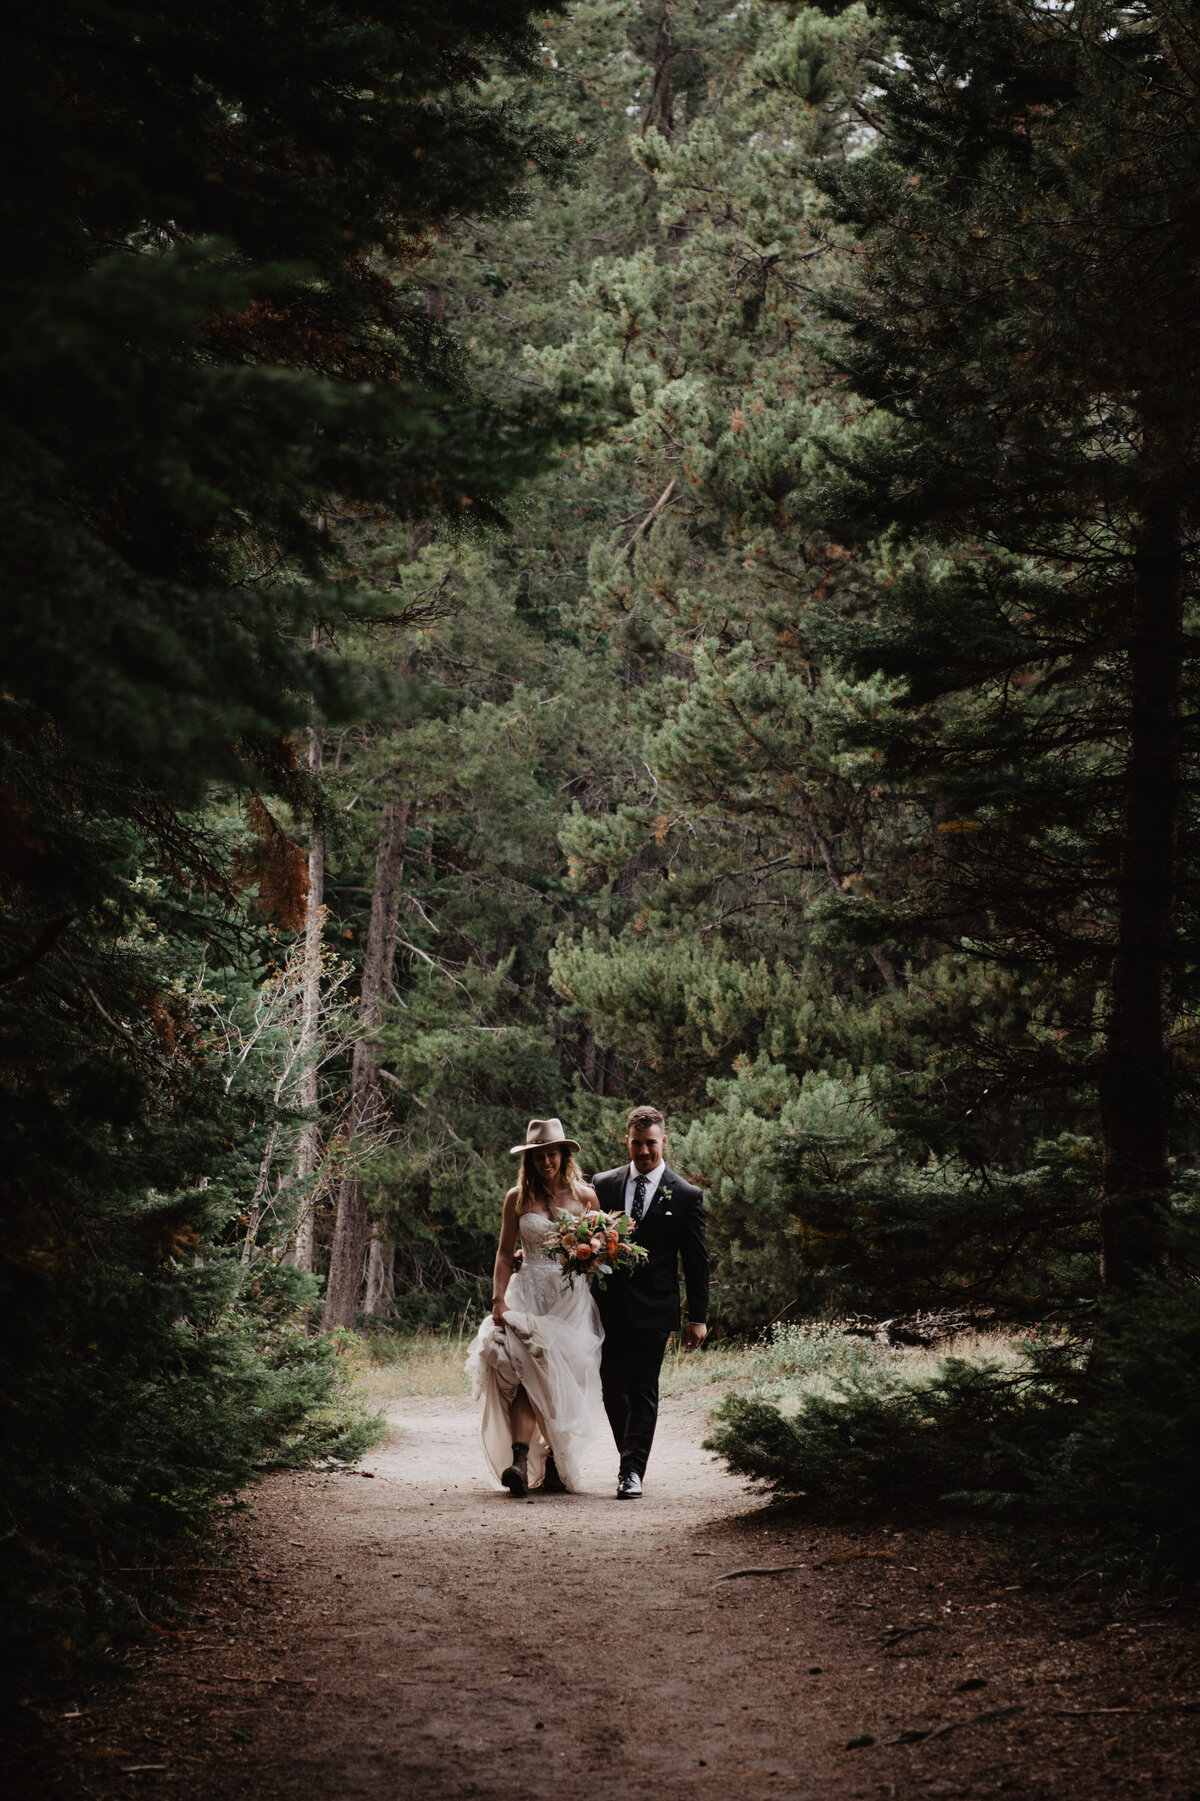 Jackson Hole Photographers capture couple holding hands walking together